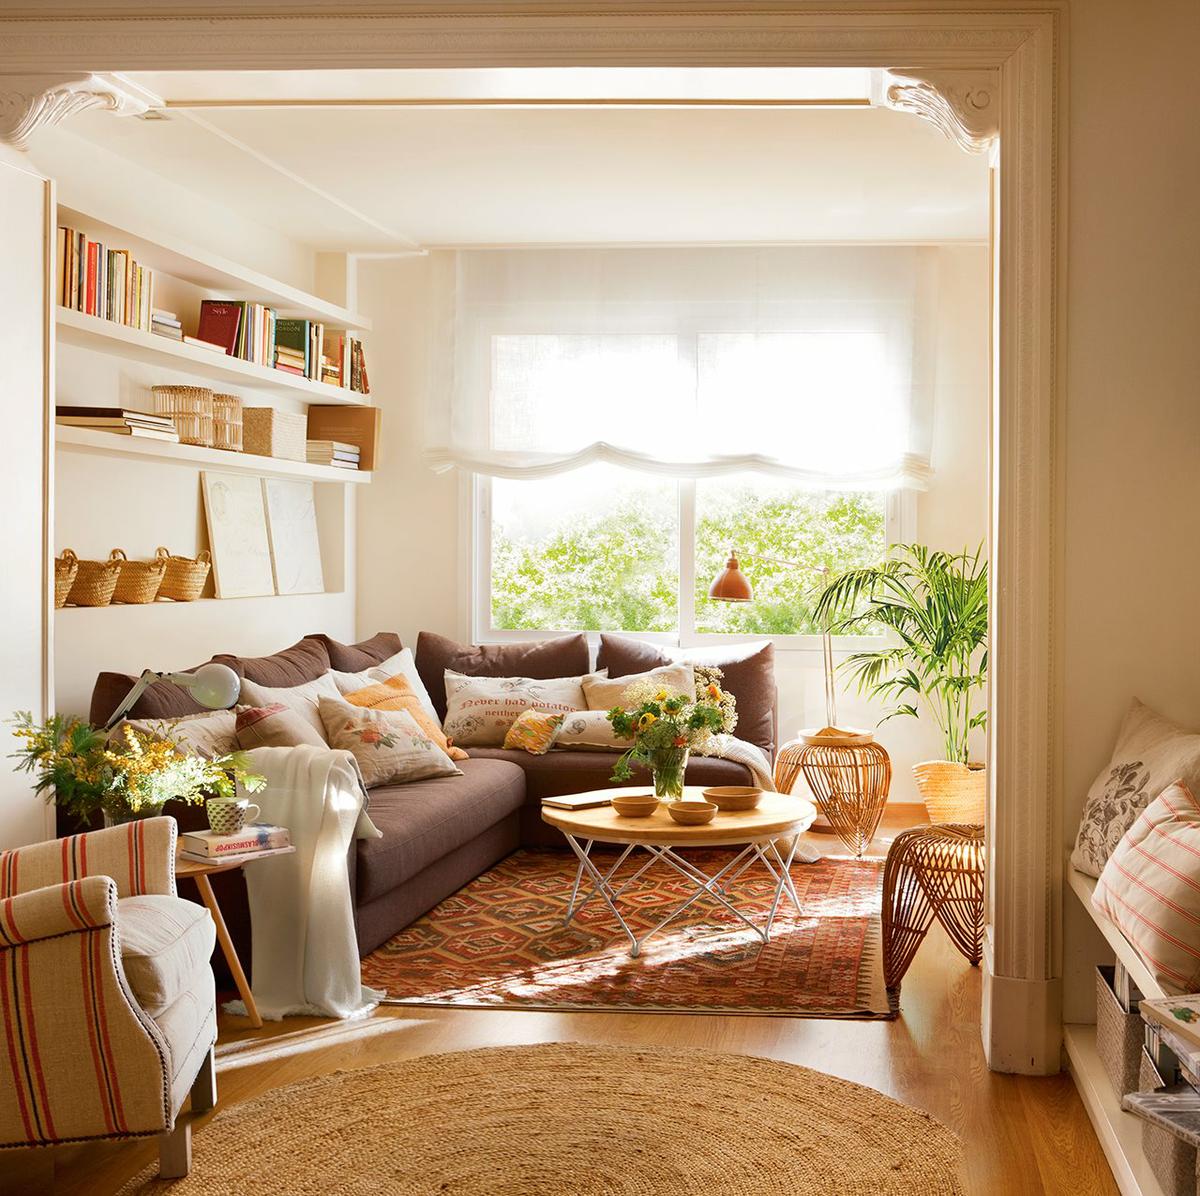 Vista del salón decorado con tonalidades tierra y baldas detras de sofá para hacer más funcional el espacio